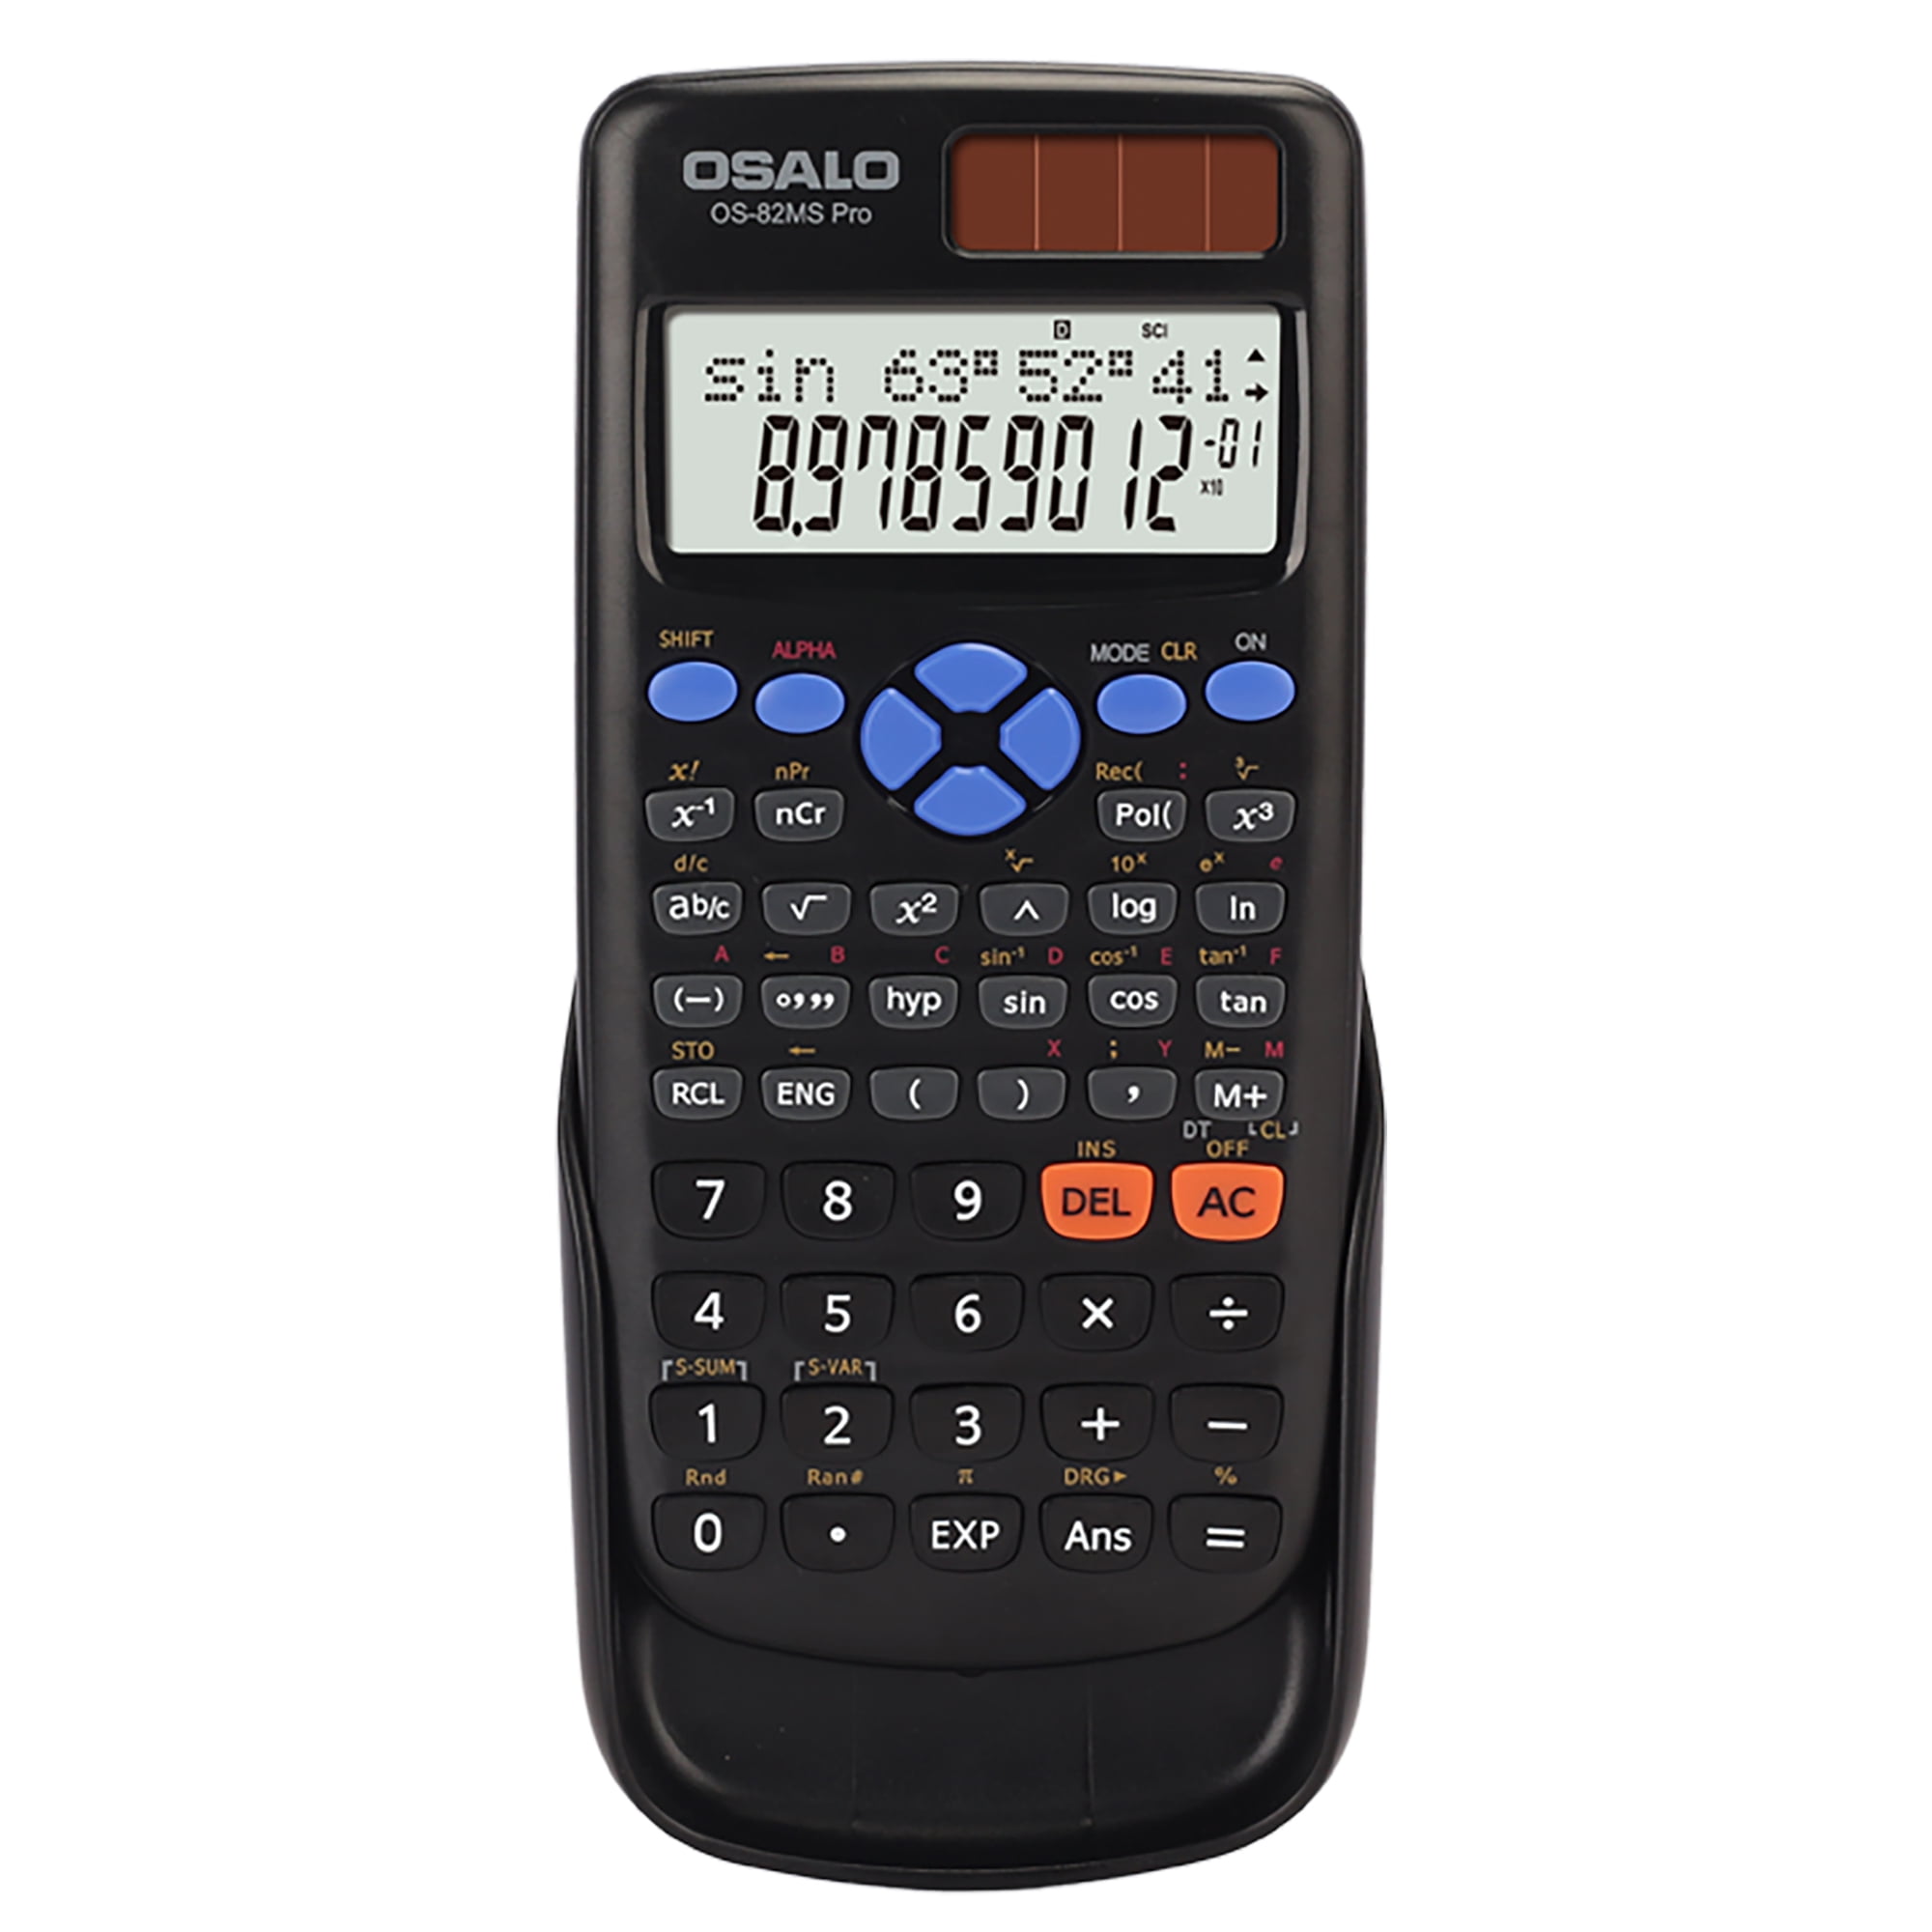 Casio FX-82MS-2 Calculatrice scolaire noir Ecran: 12 à pile(s) (l x H x P)  77 x 14 x 162 mm - Conrad Electronic France